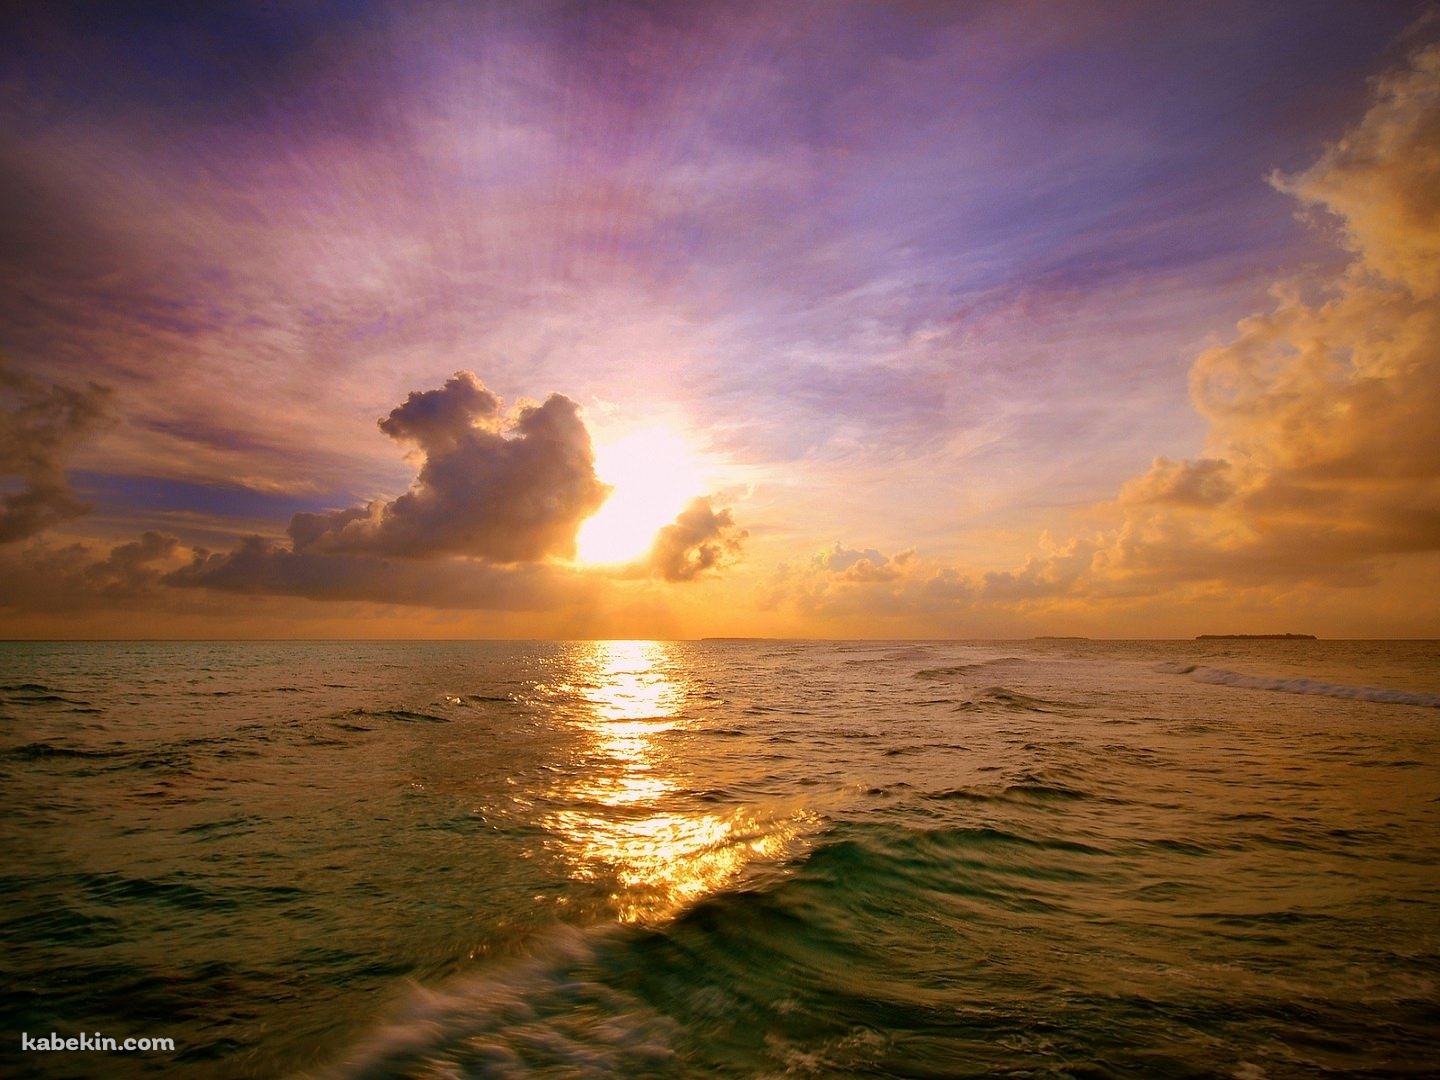 モルディブの海と夕日の壁紙(1440px x 1080px) 高画質 PC・デスクトップ用